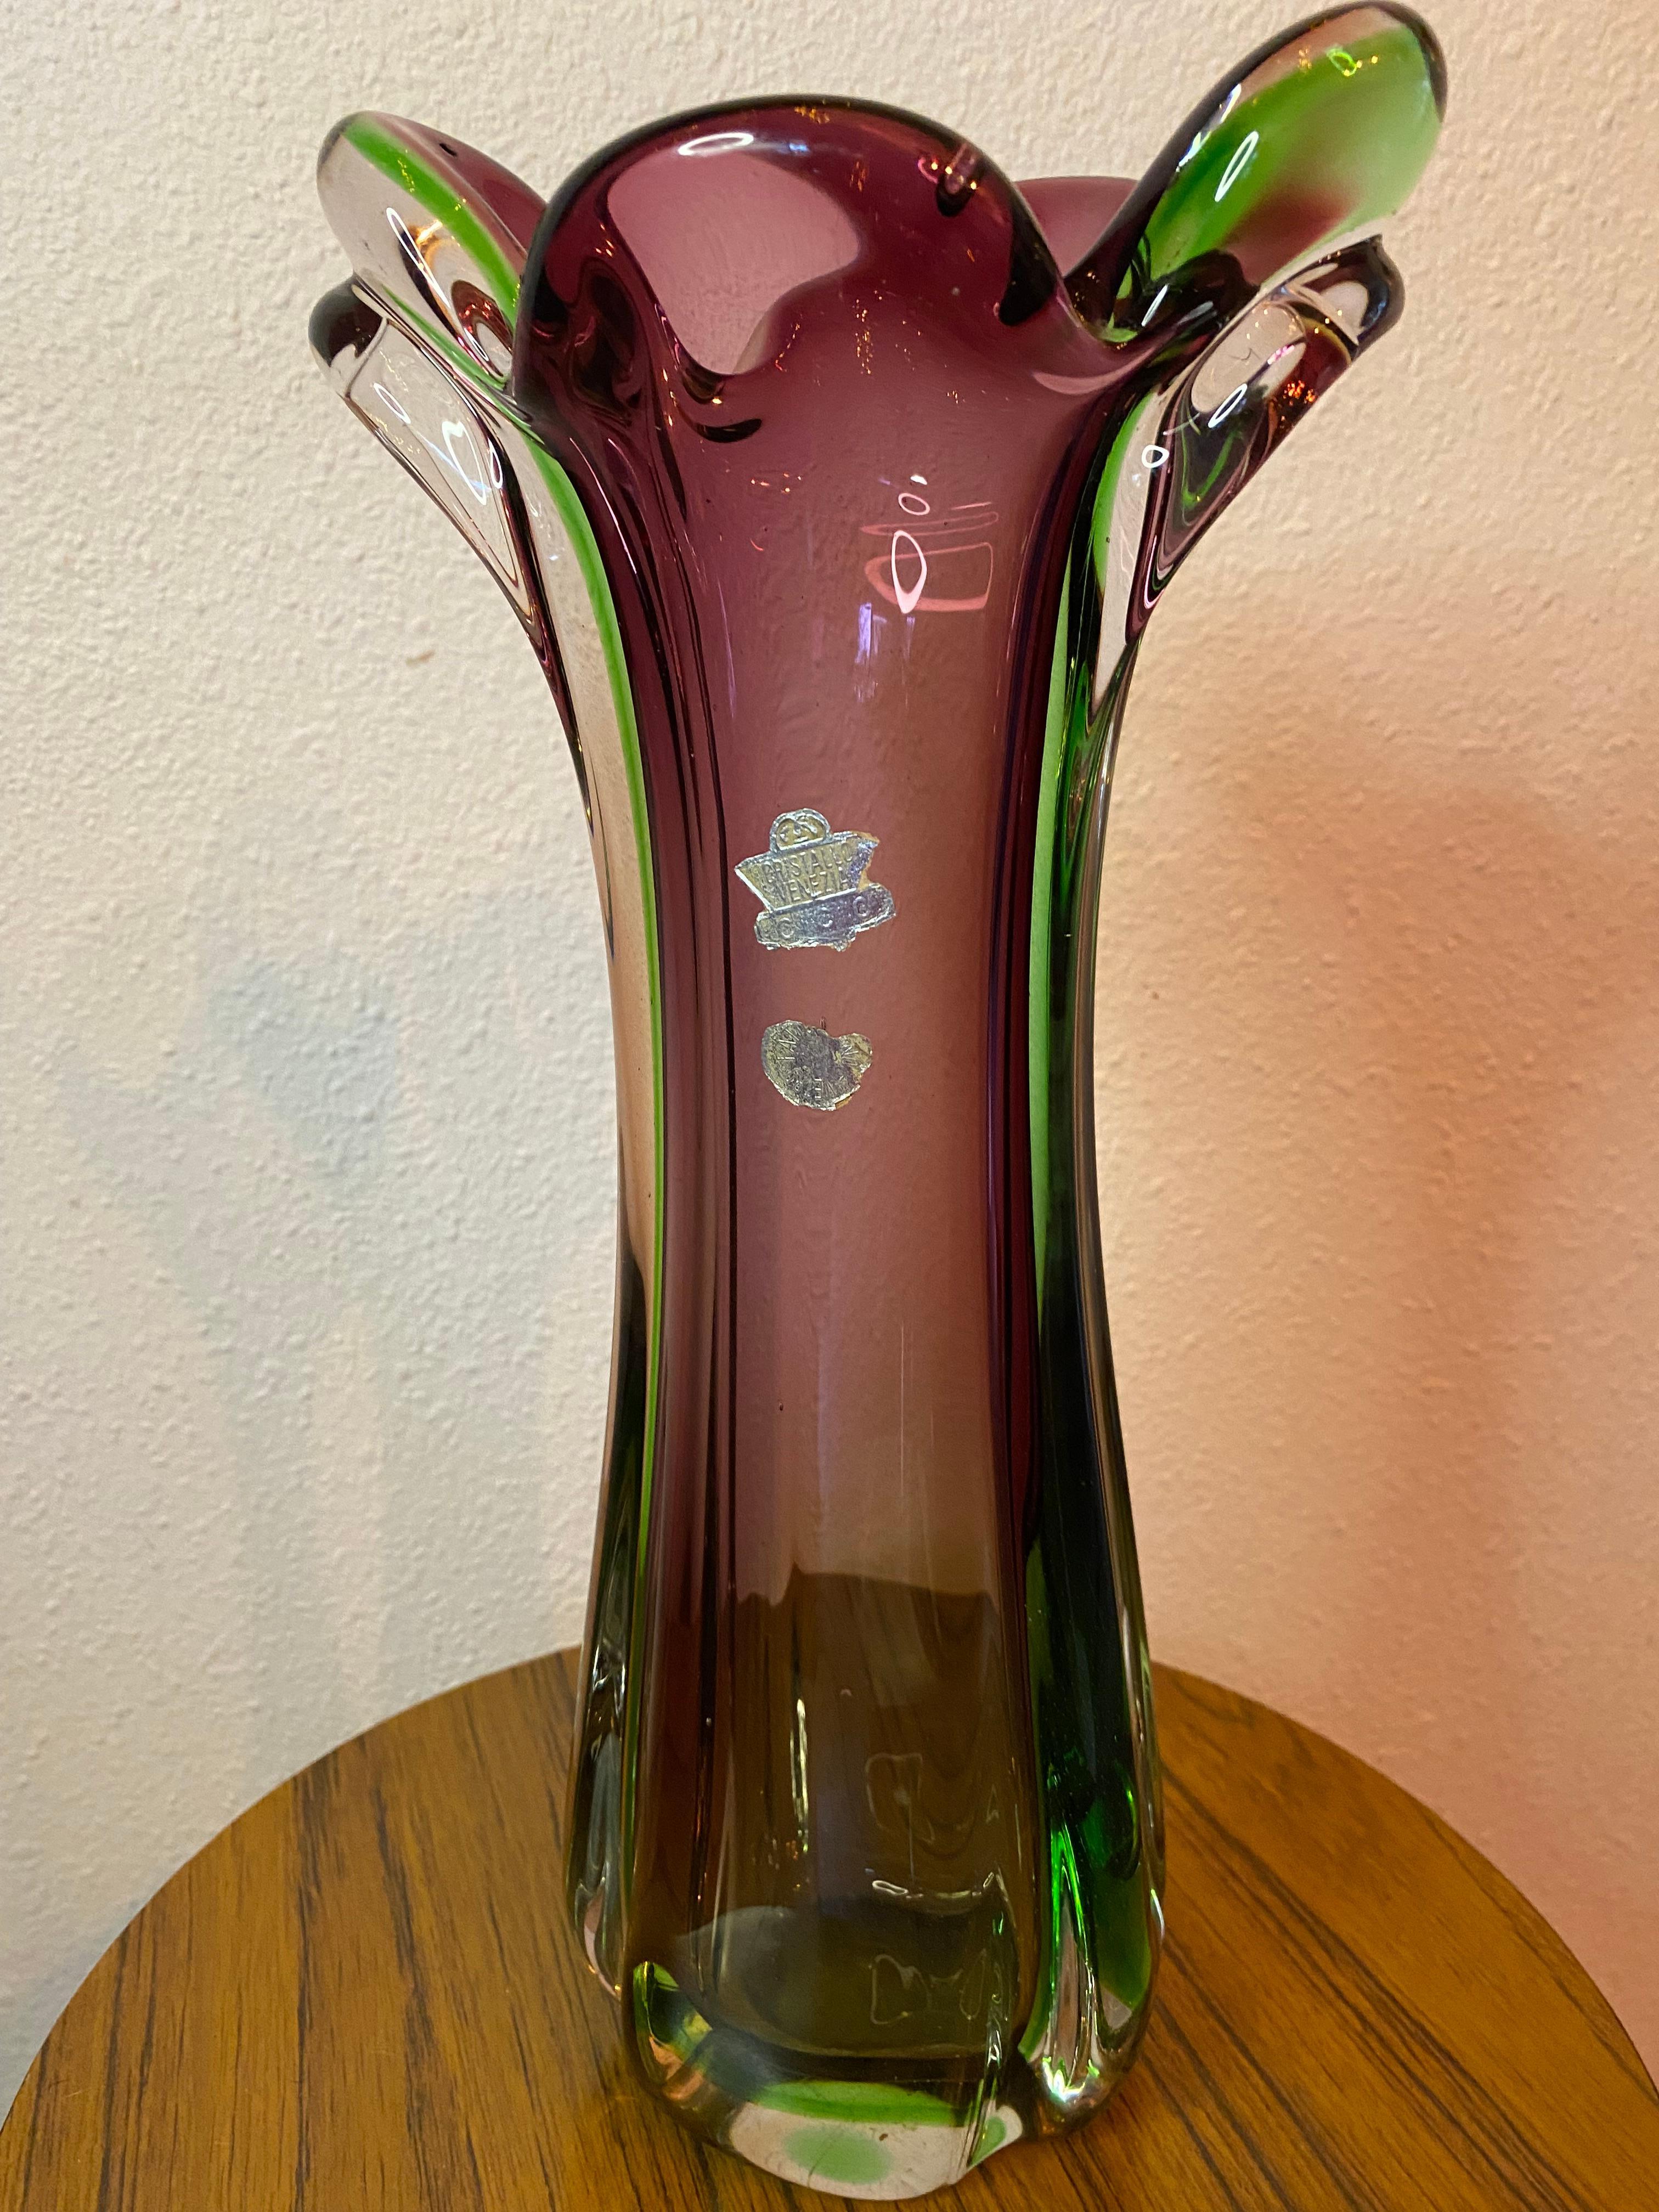 Magnifique vase en verre italien de Murano, de style moderne du milieu du siècle, de couleur violette et verte.
Cette pièce est grande et pèse 2 kilos. 